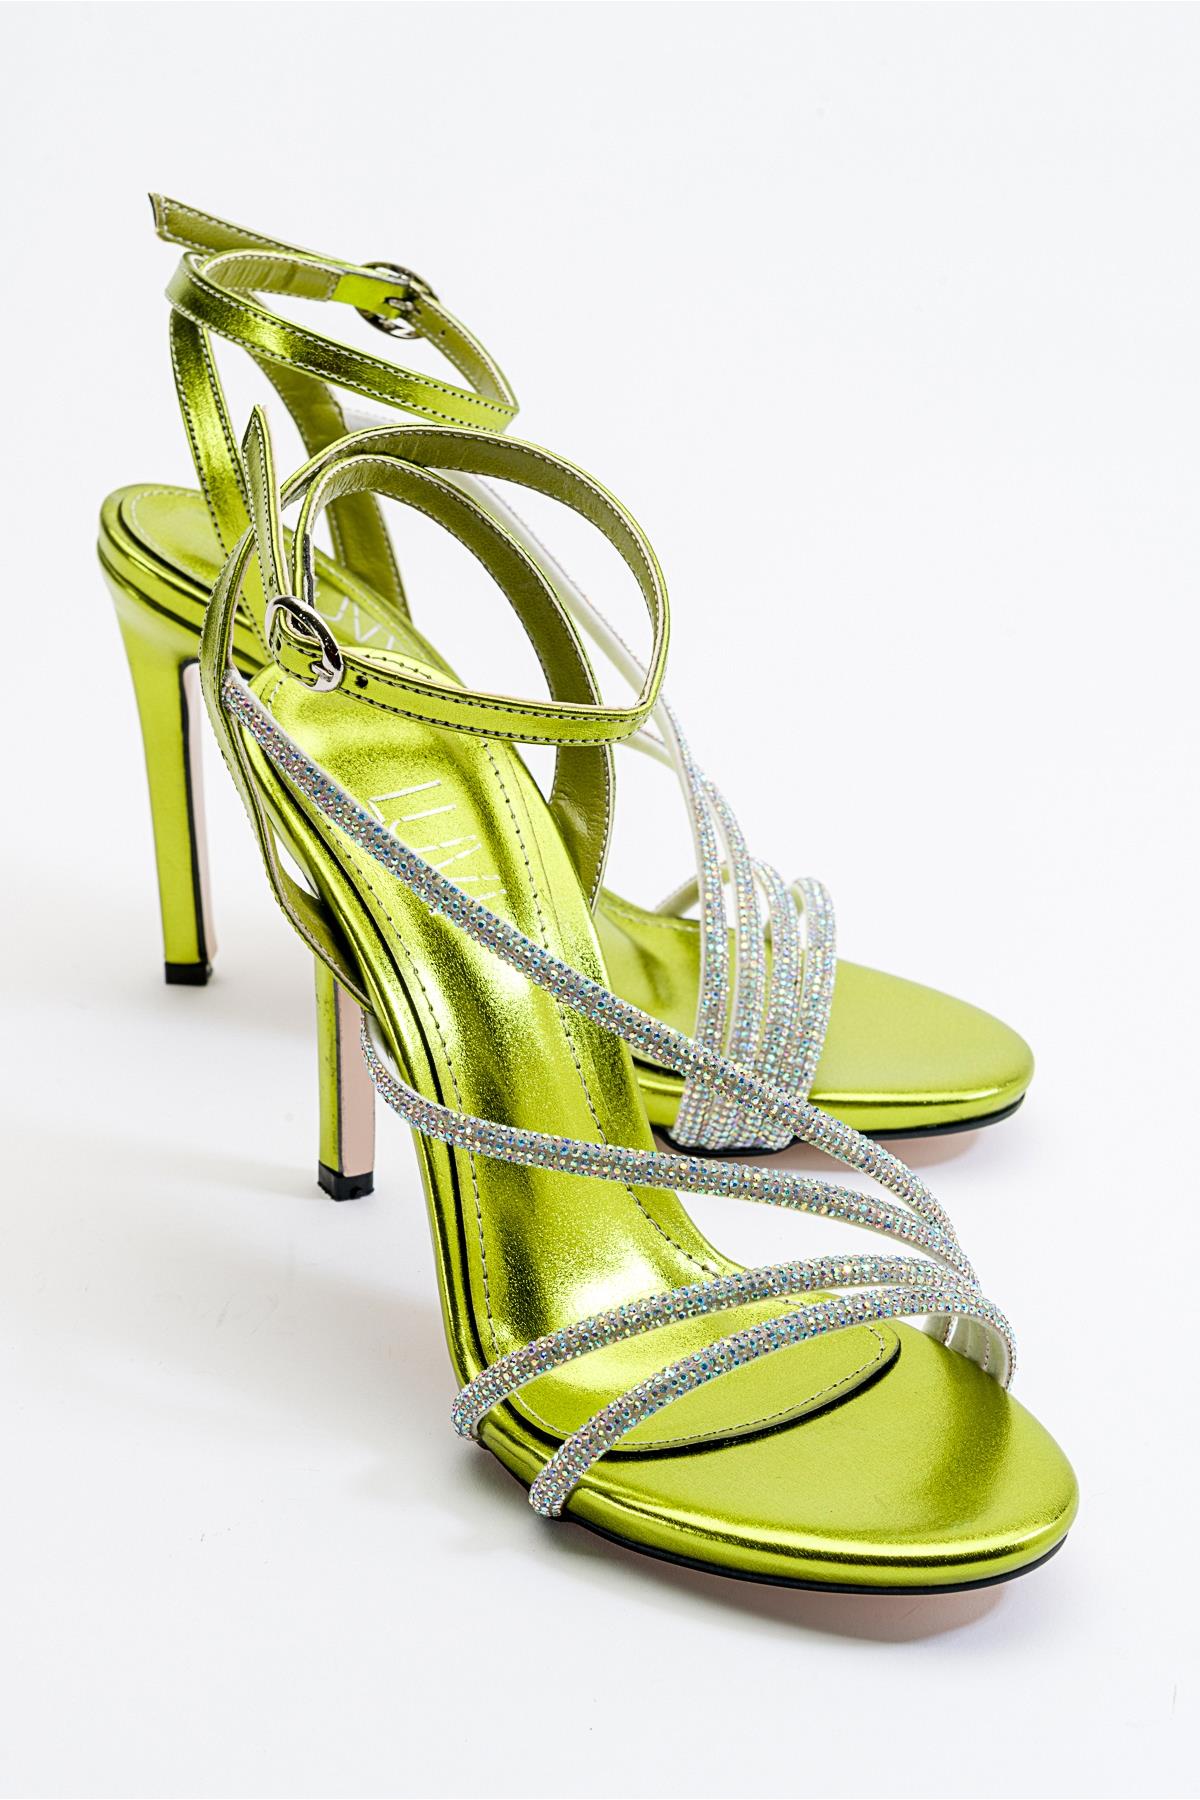 LEEDY Yeşil Kadın Topuklu Ayakkabı